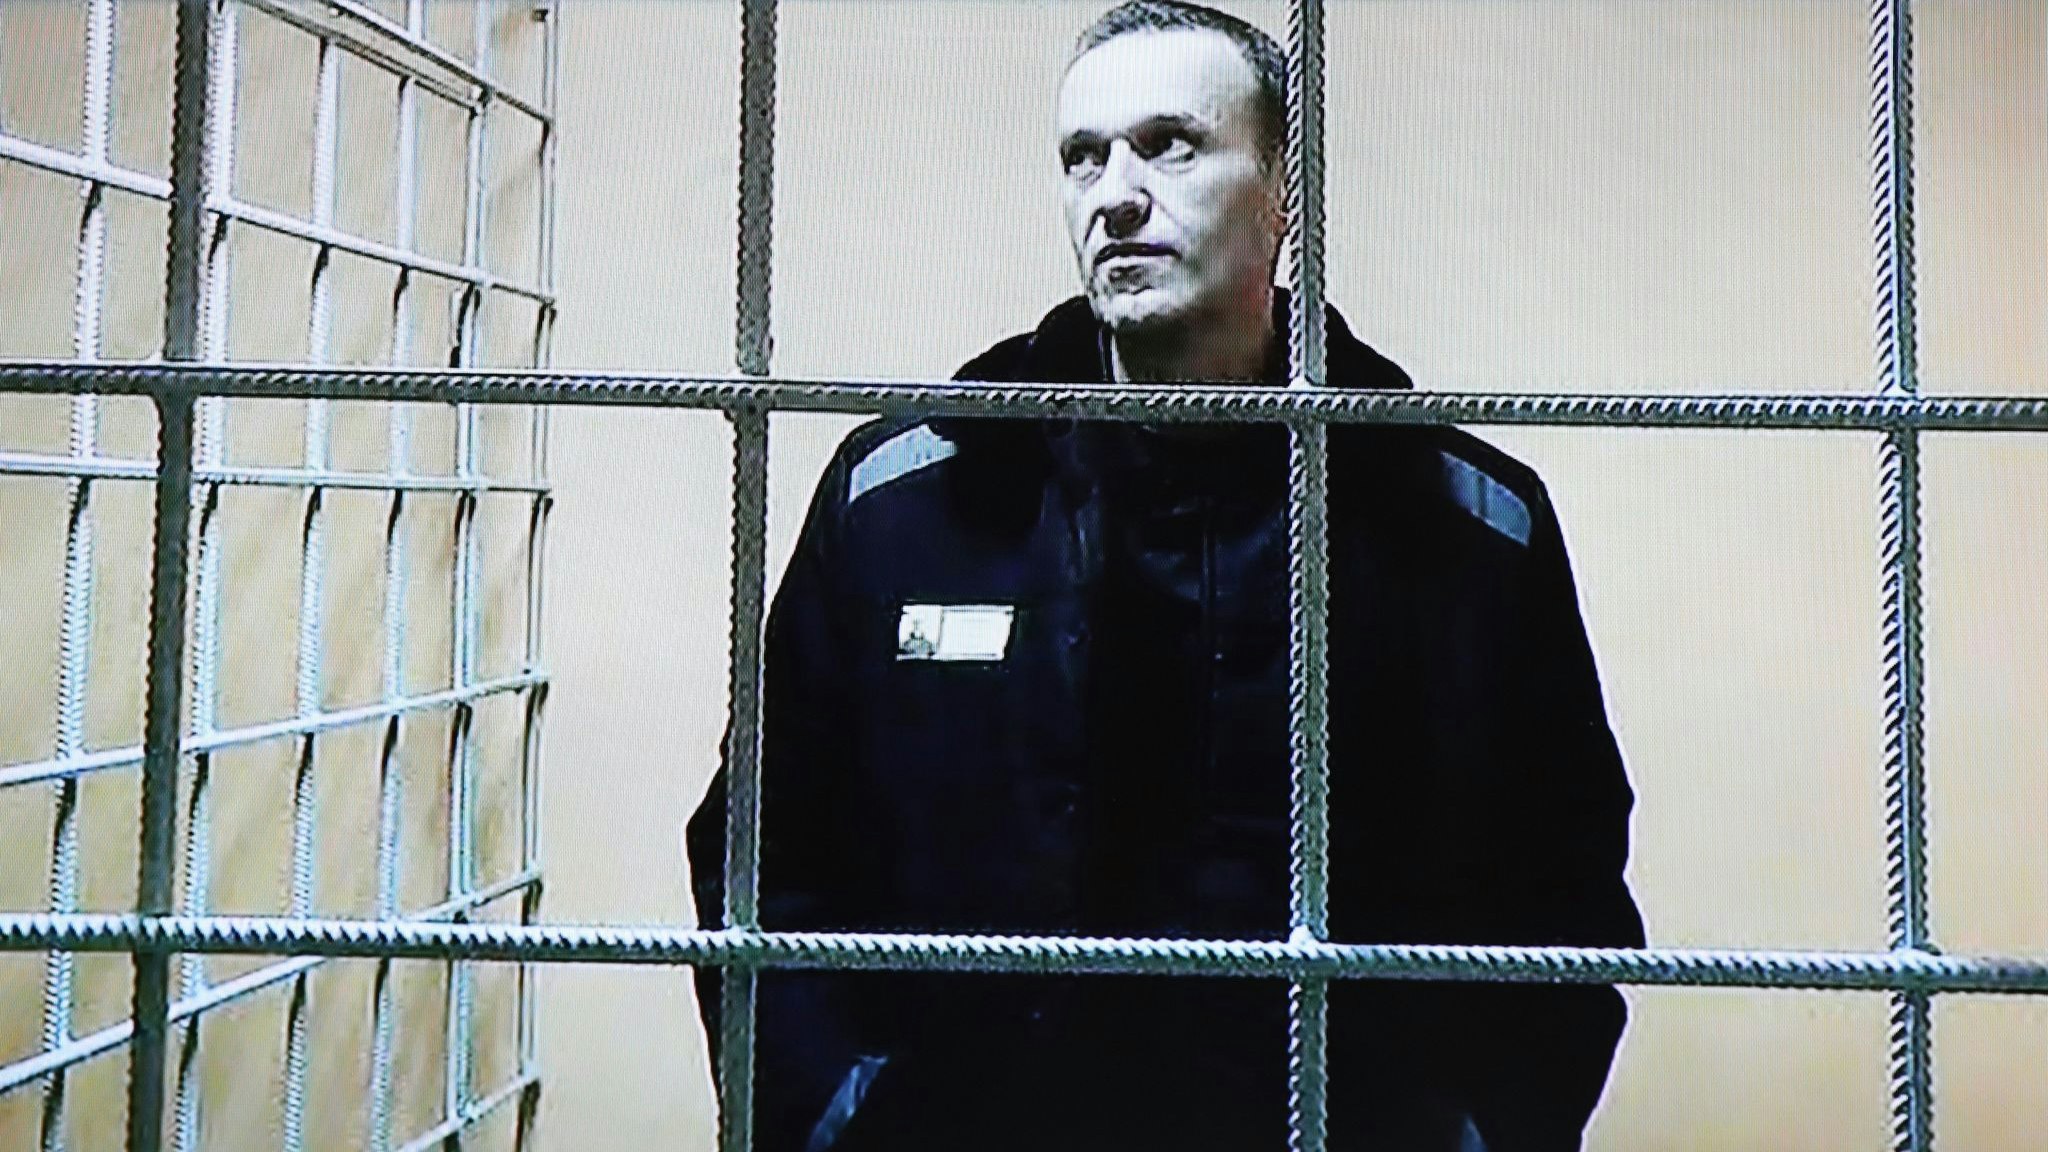 Putin-Gegner Alexej Nawalny verbüßt bereits eine mehrjährige Haftstrafe in einem Straflager in Pokrow, rund 100 Kilometer östlich von Moskau. Foto: dpa/Feldman